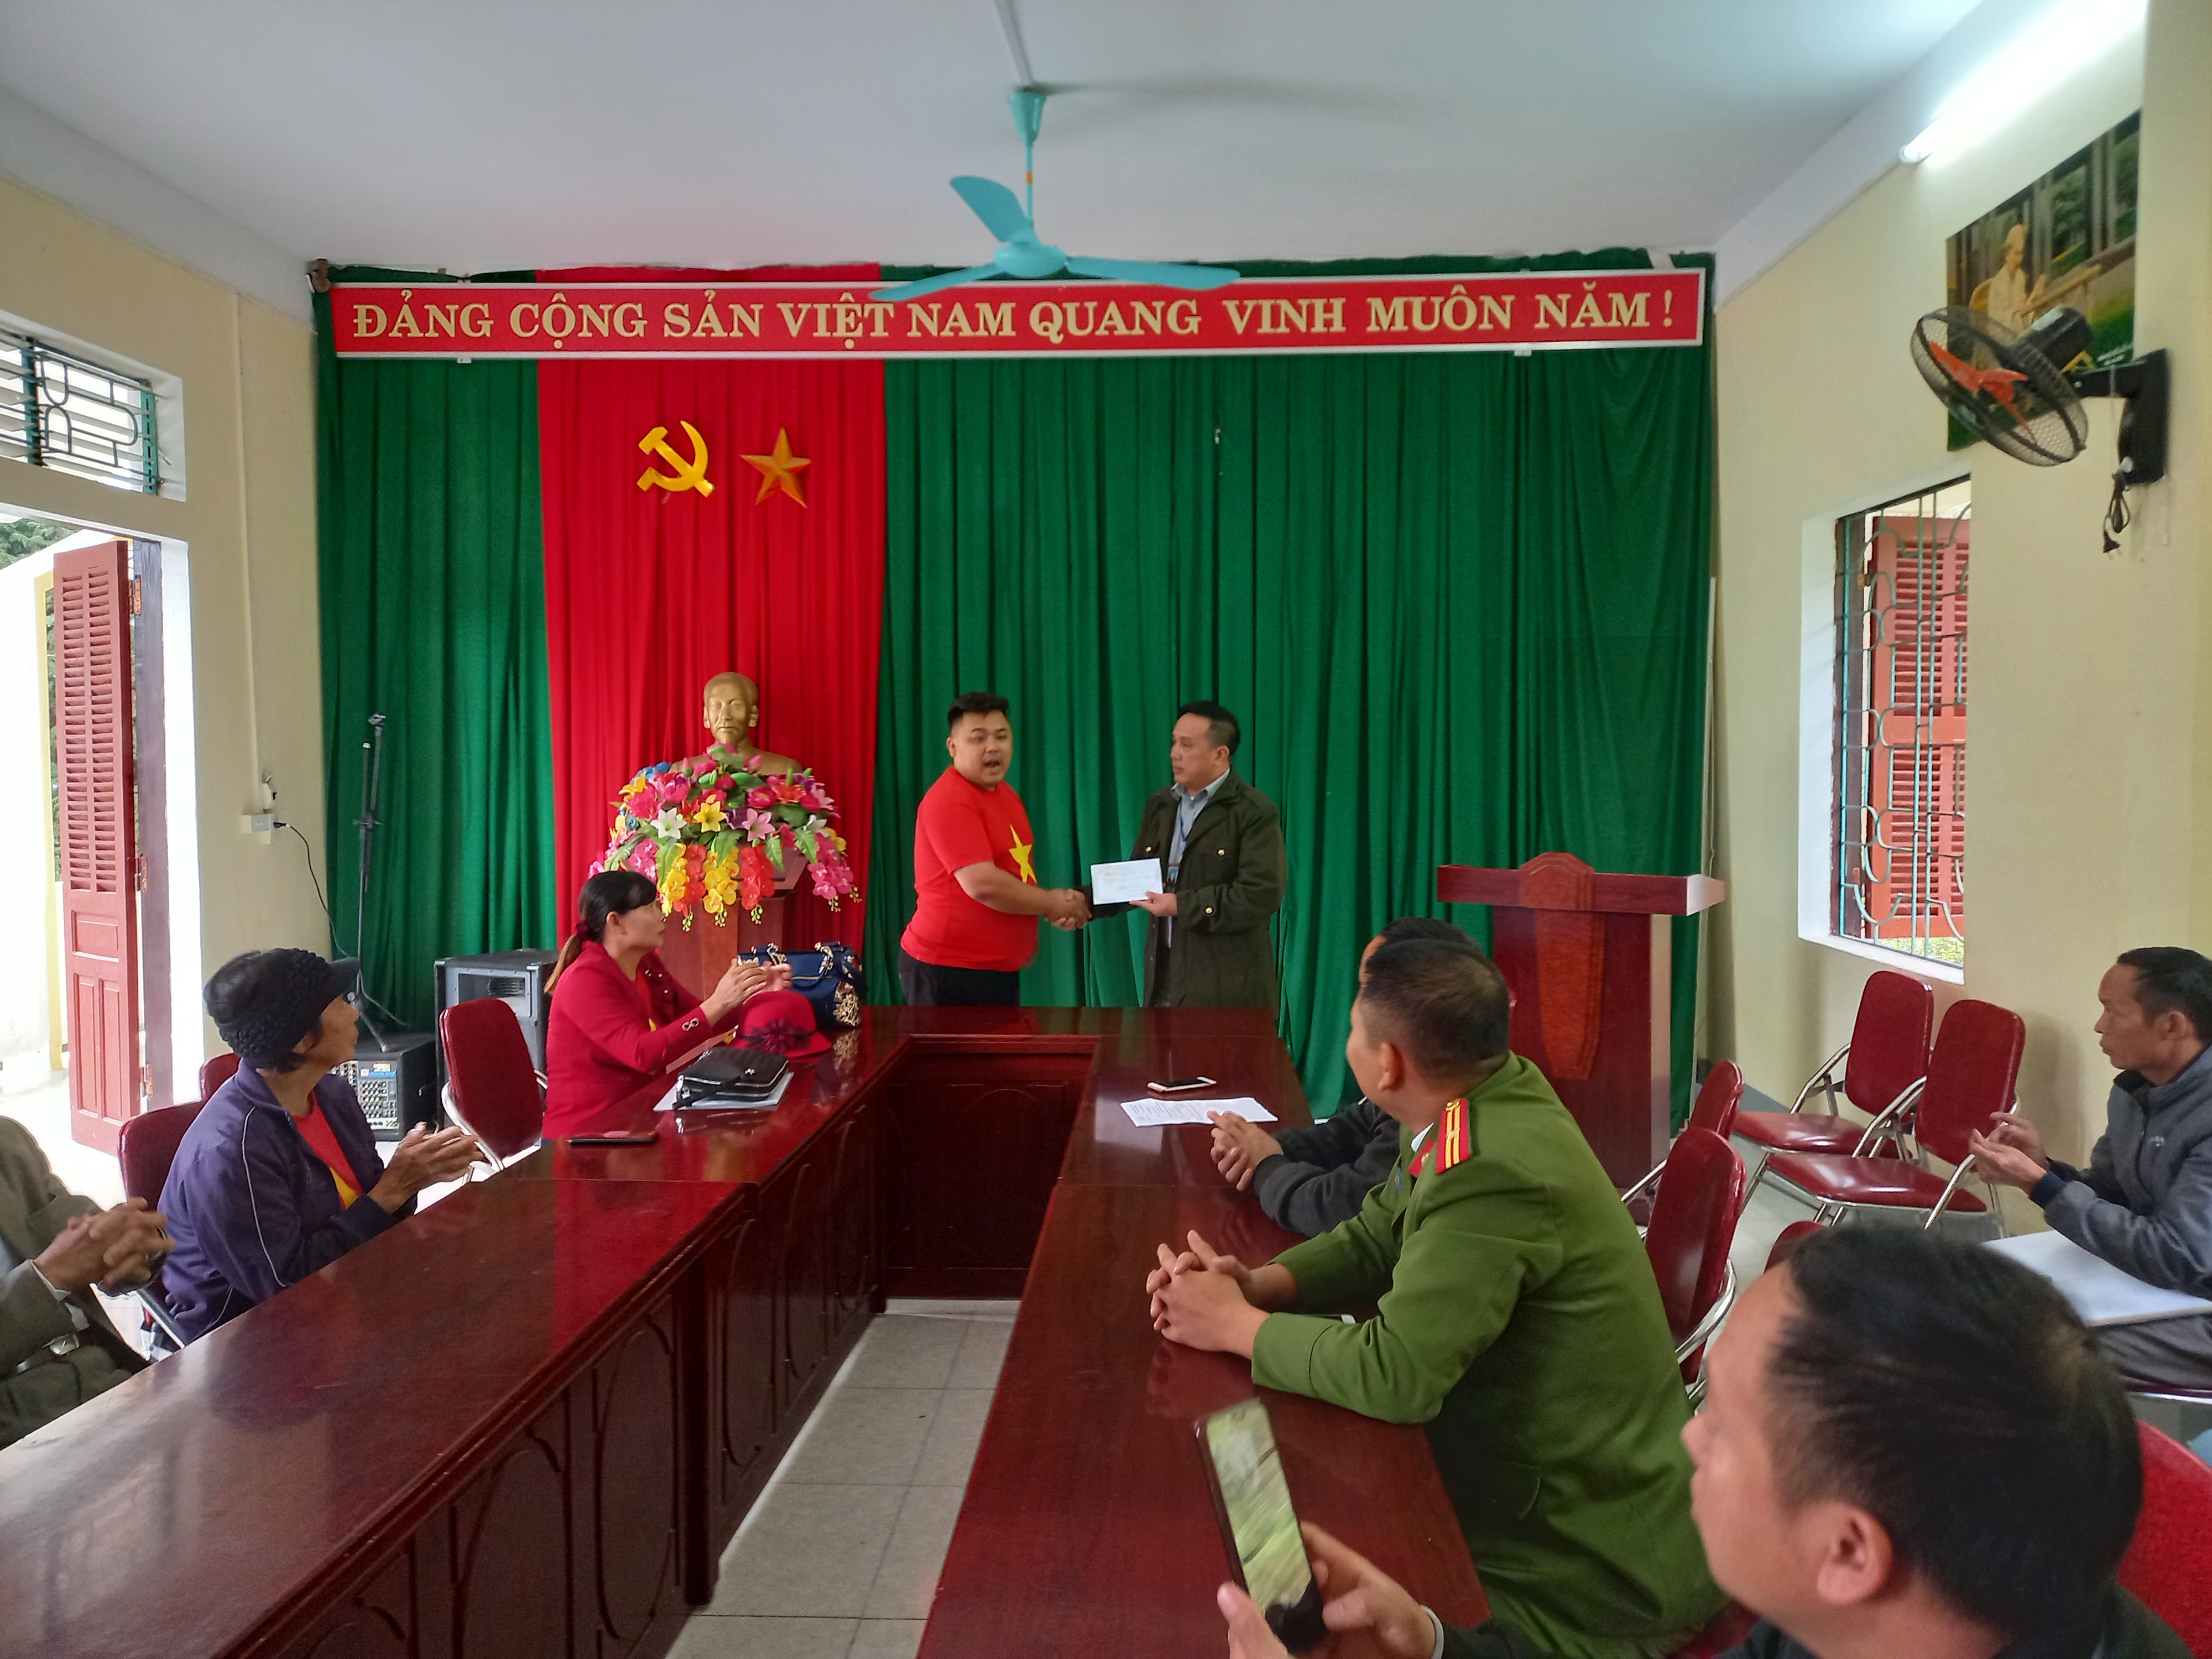 Đoàn từ thiện Phường Cộng Hòa, Yên Hưng, Quảng Ninh tặng quà cho các hộ nghèo xã Lũng Phìn